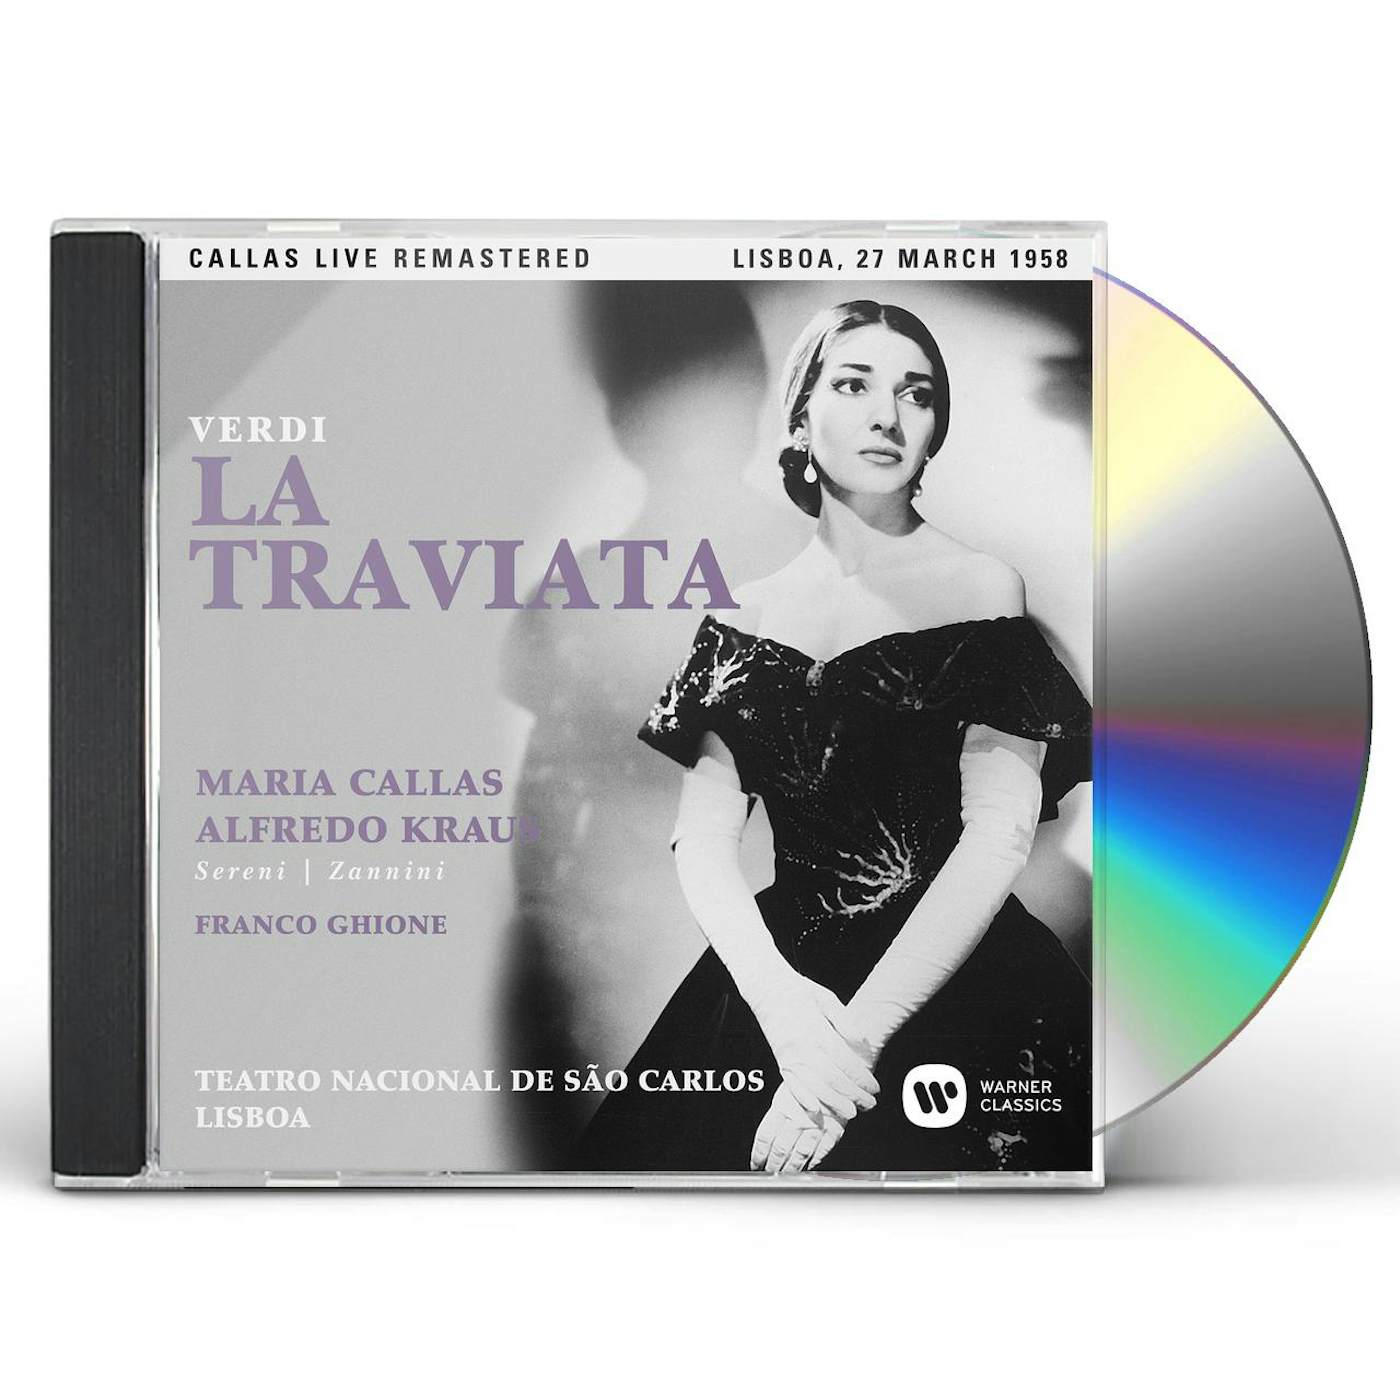 Maria Callas VERDI: LA TRAVIATA (LISBOA 27/03/1958) CD